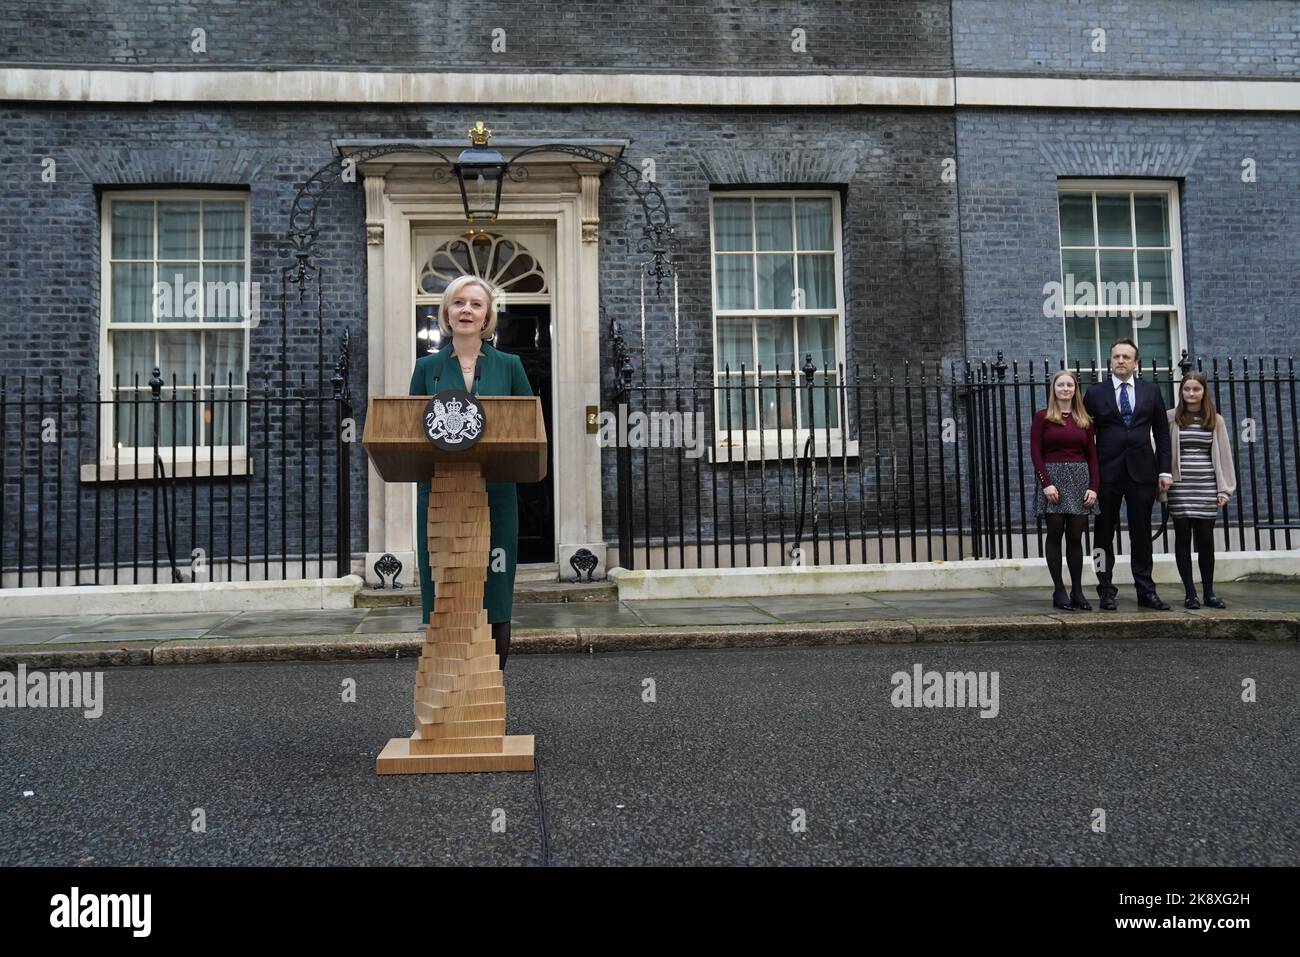 Der scheidende Premierminister Liz Truss hielt eine Rede vor der Downing Street 10, London, bevor er zum Buckingham Palace reiste, um mit König Charles III. Zu einer Audienz zu sprechen, um formell als Premierminister zurückzutreten. Bilddatum: Dienstag, 25. Oktober 2022. Stockfoto